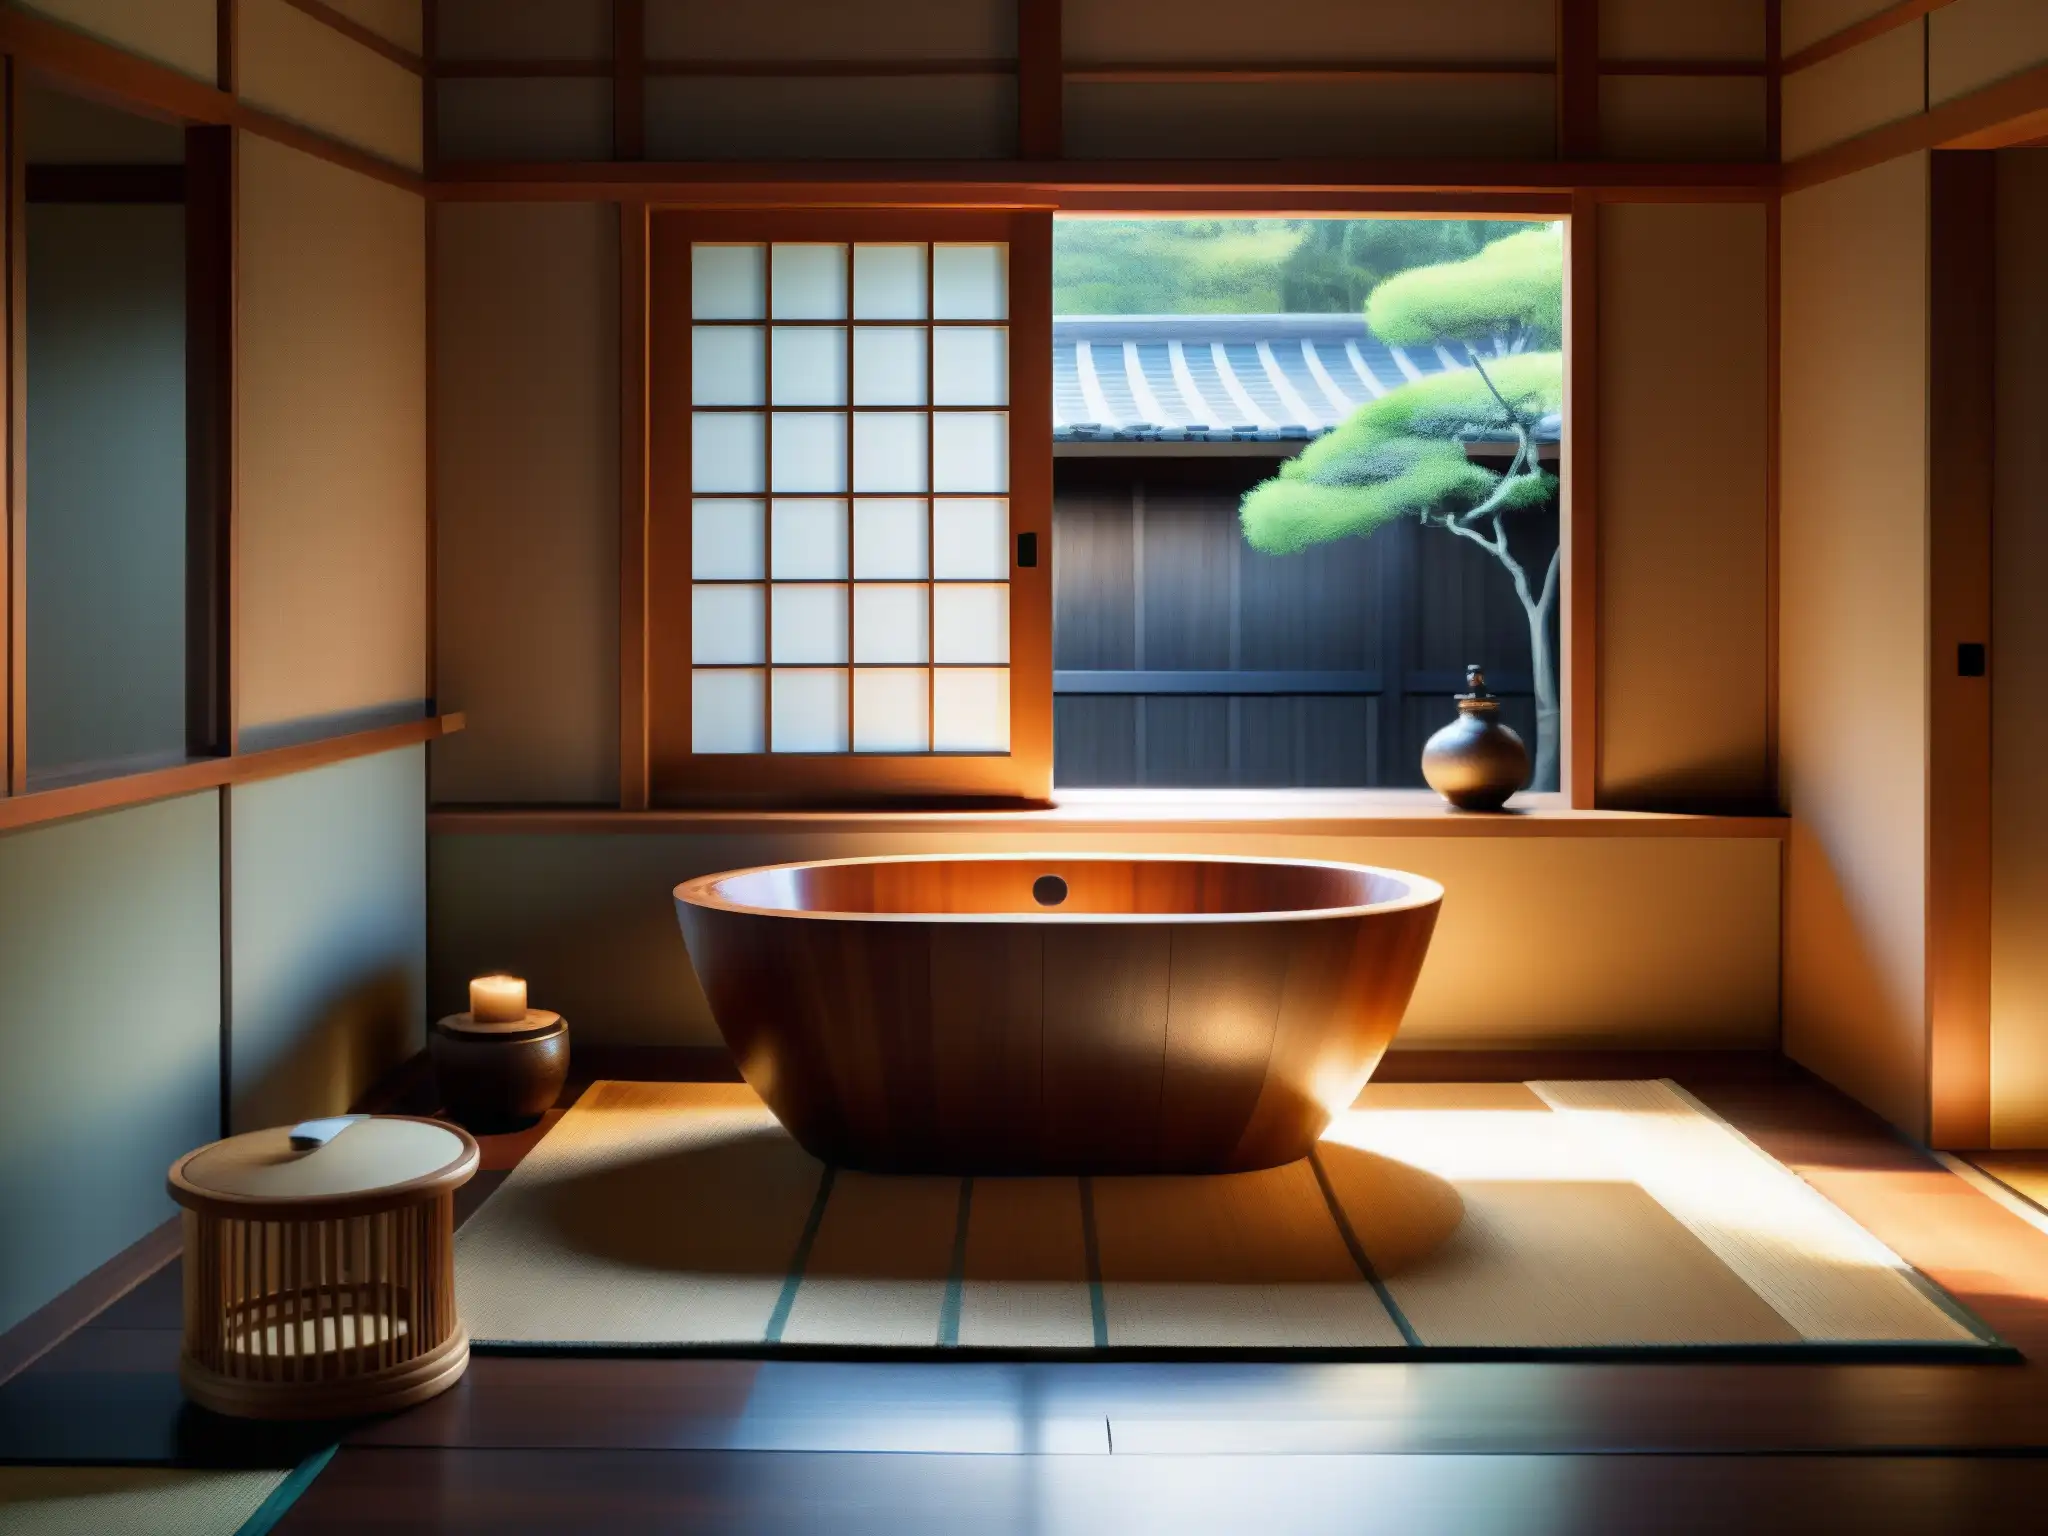 Baño tradicional japonés con tina de madera, luz natural y serenidad, significado cultural de Aka Manto